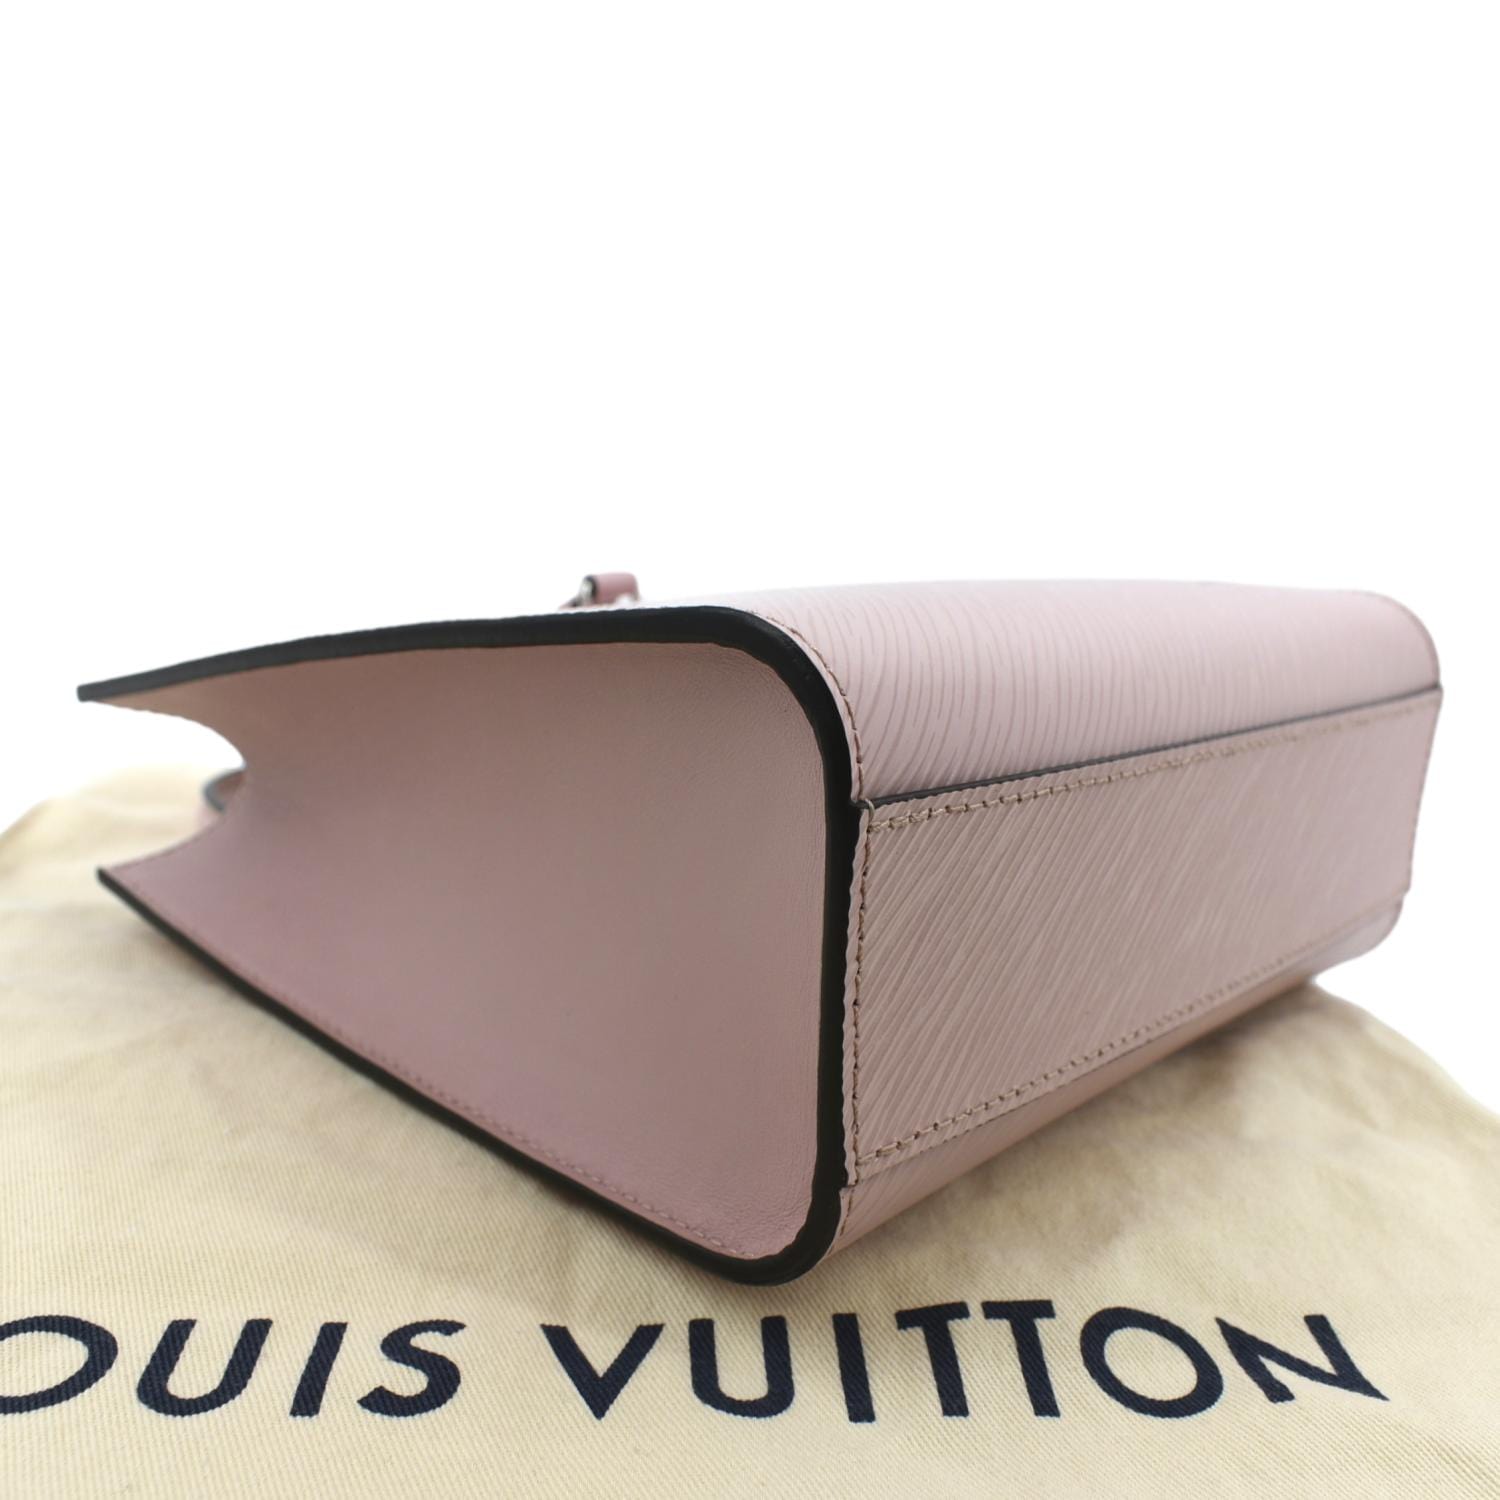 Louis Vuitton Twist Wallet Rose Ballerine